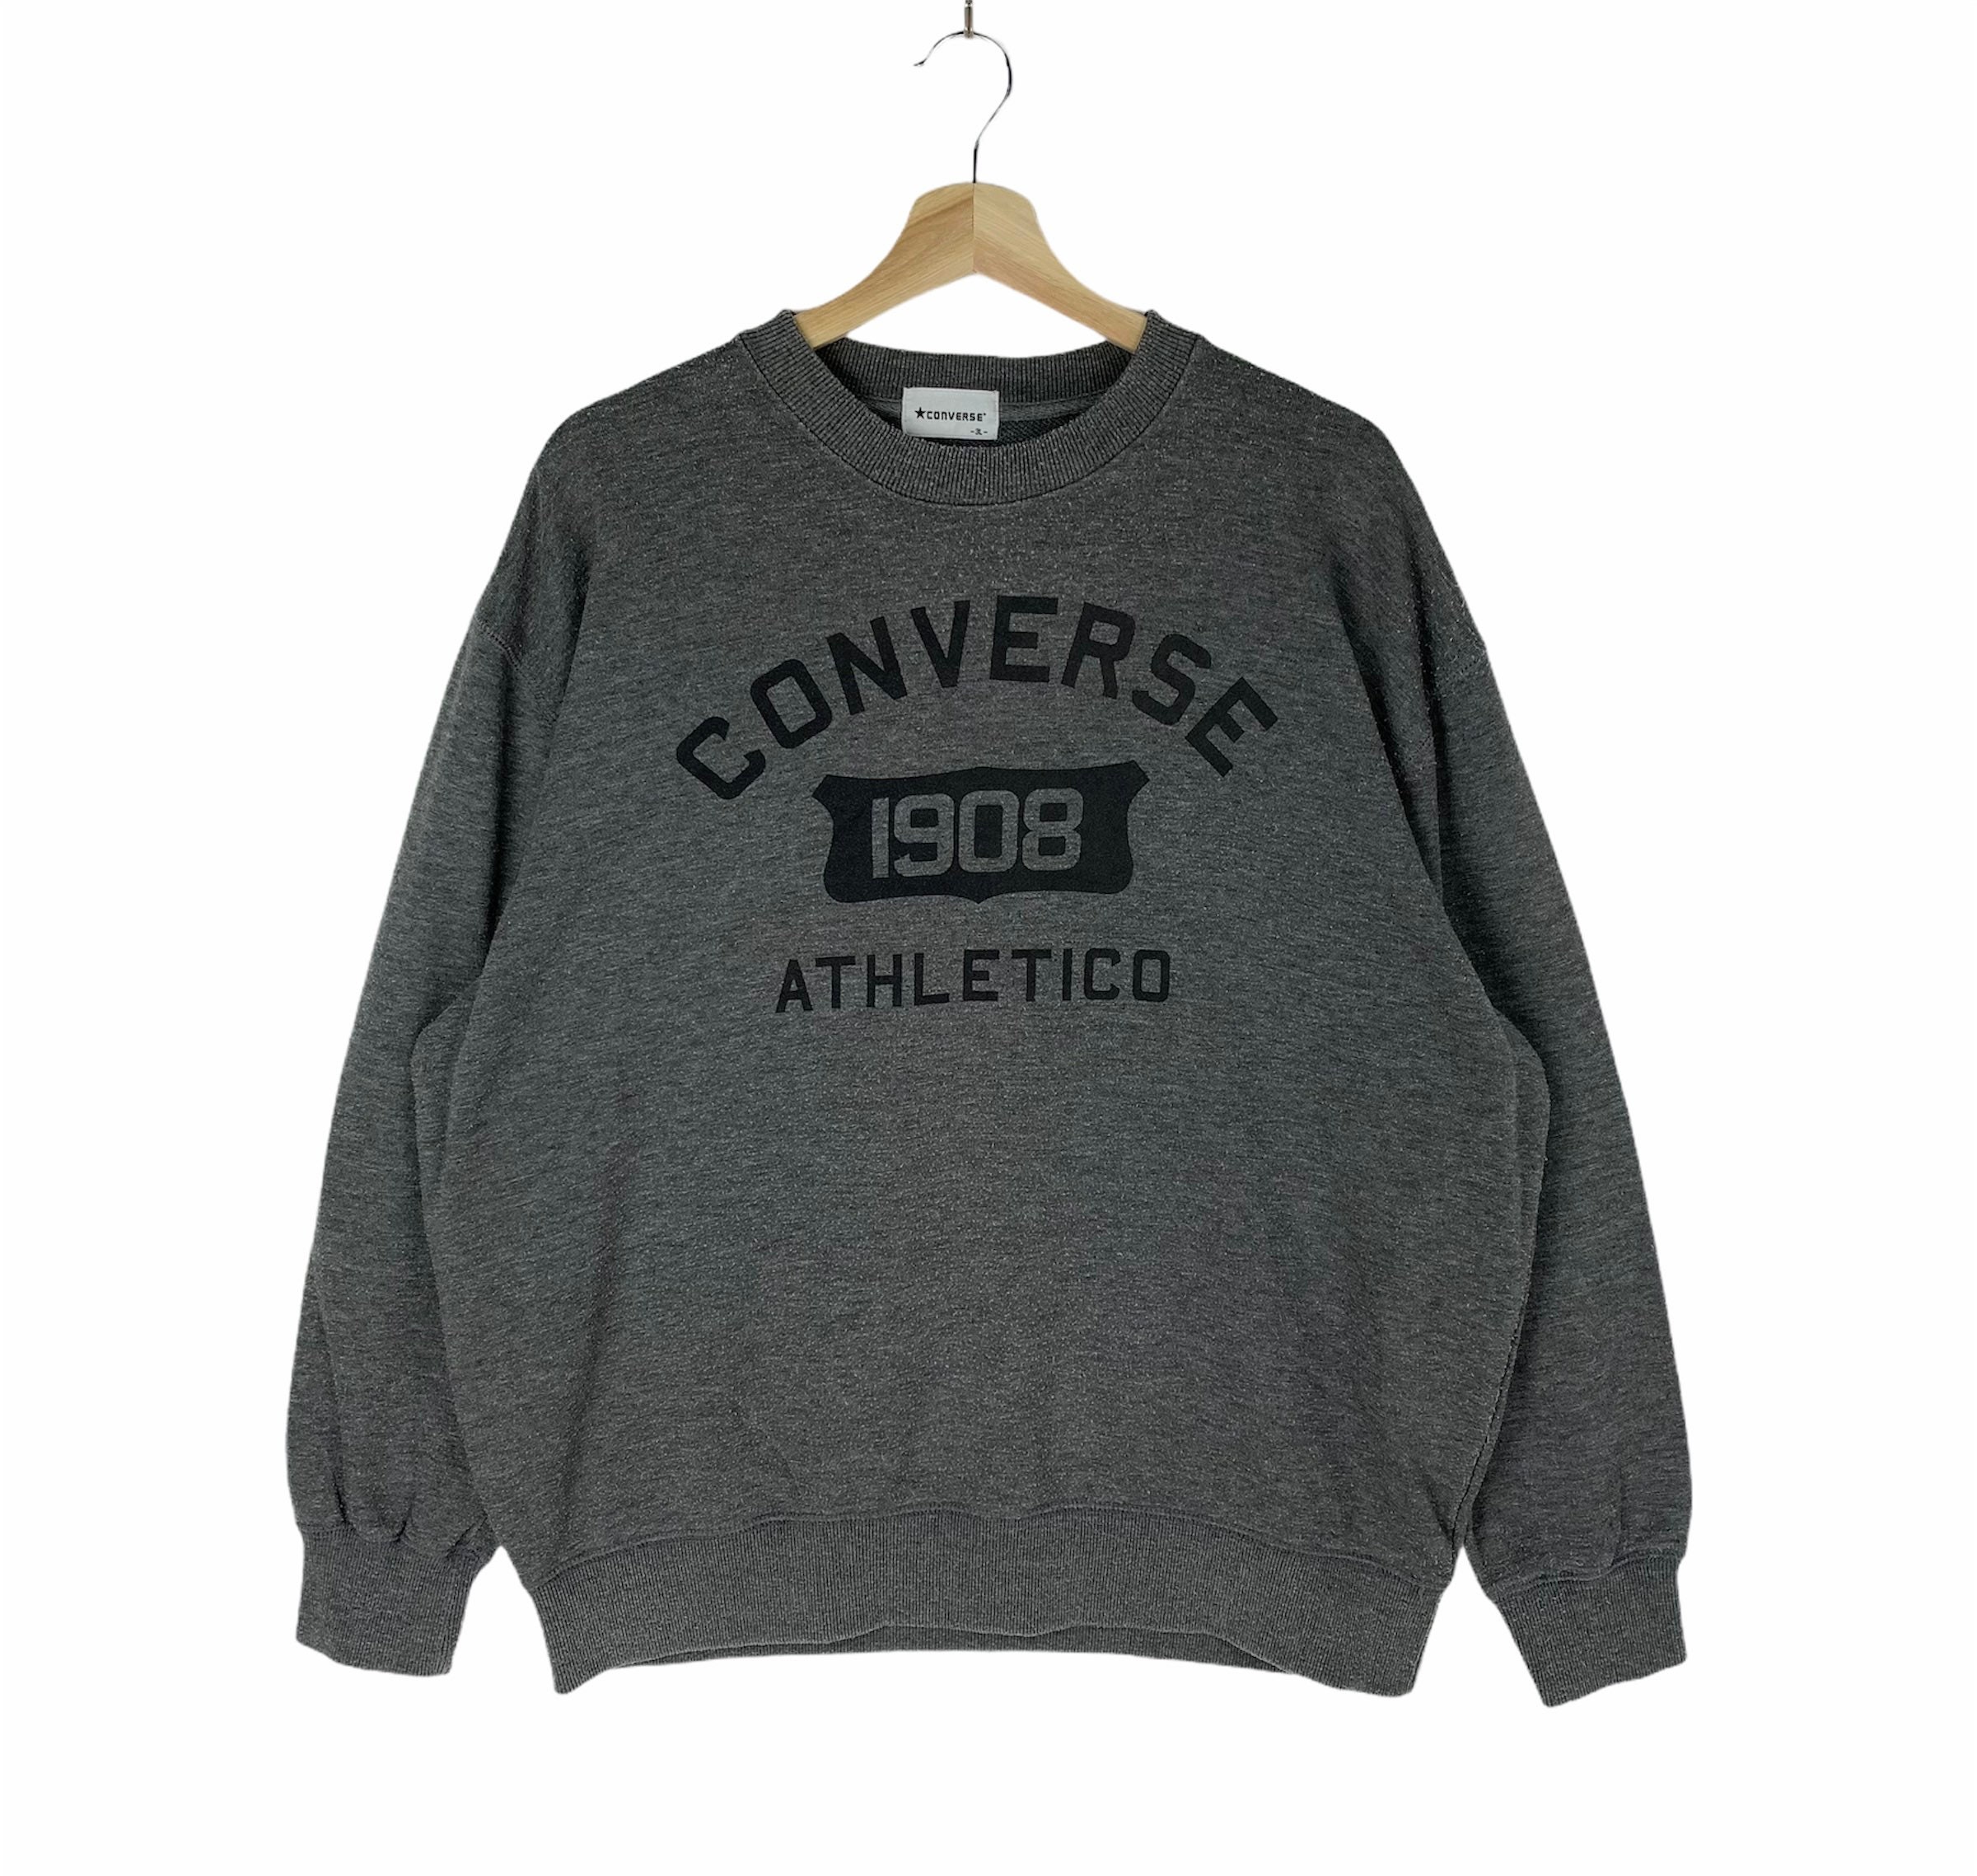 Converse 1908 - Etsy